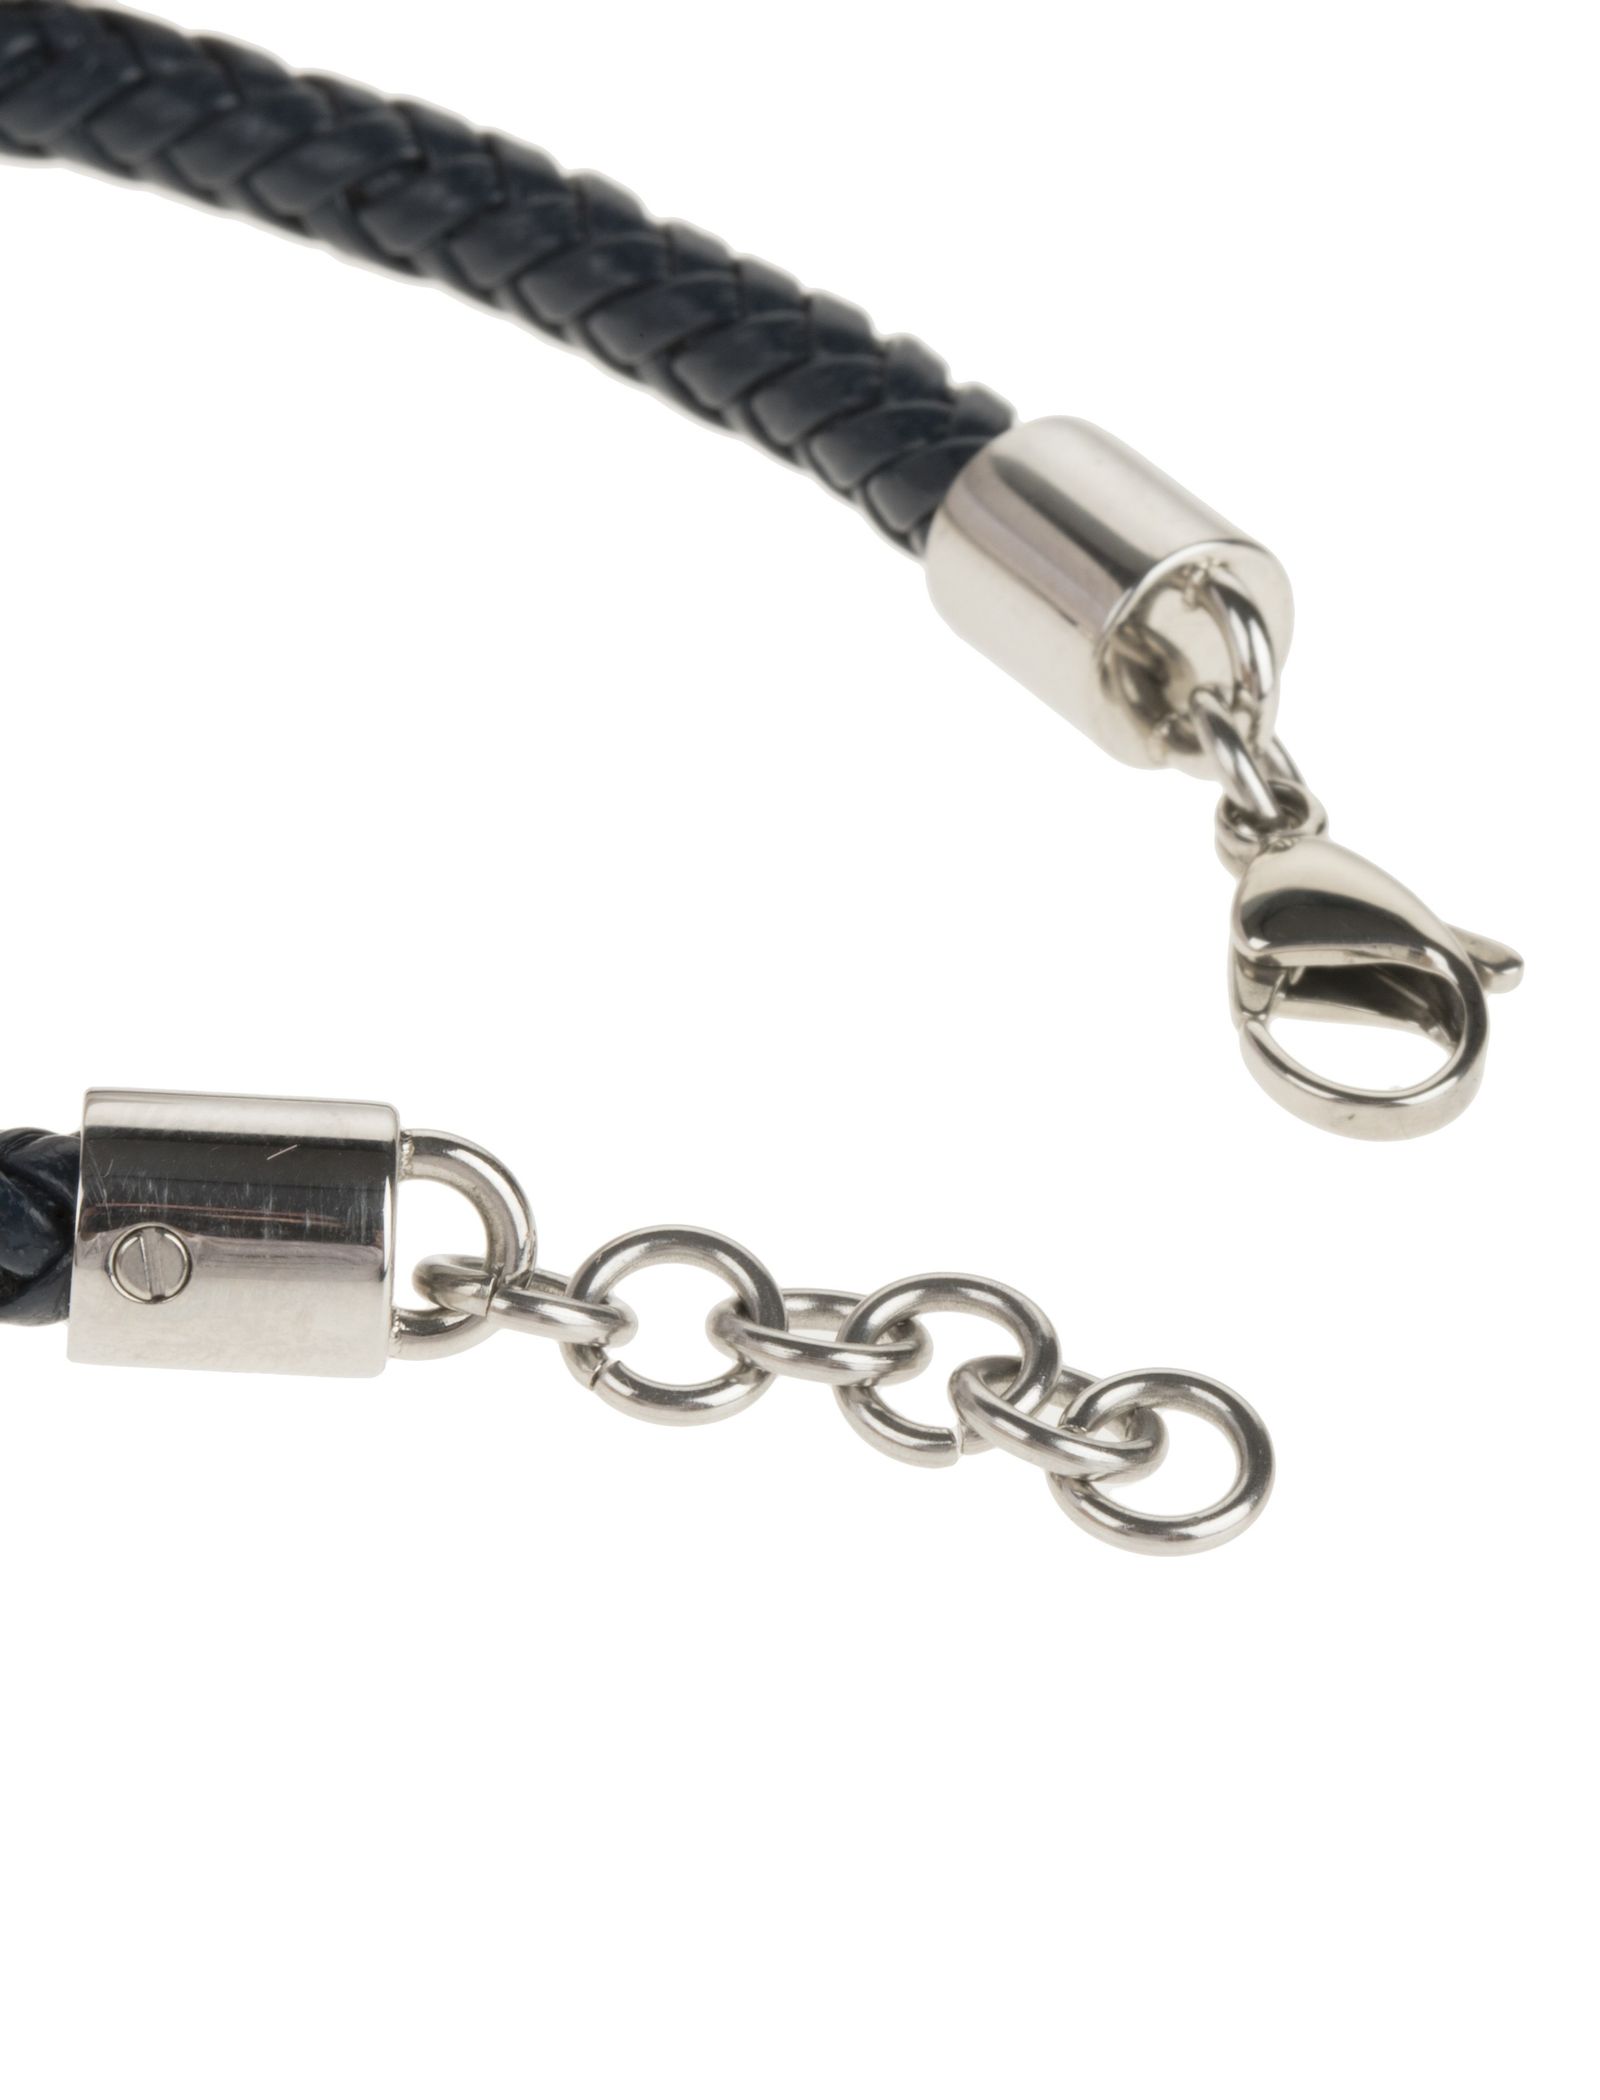 دستبند چرمی مردانه - برازوی تک سایز - Black - 5